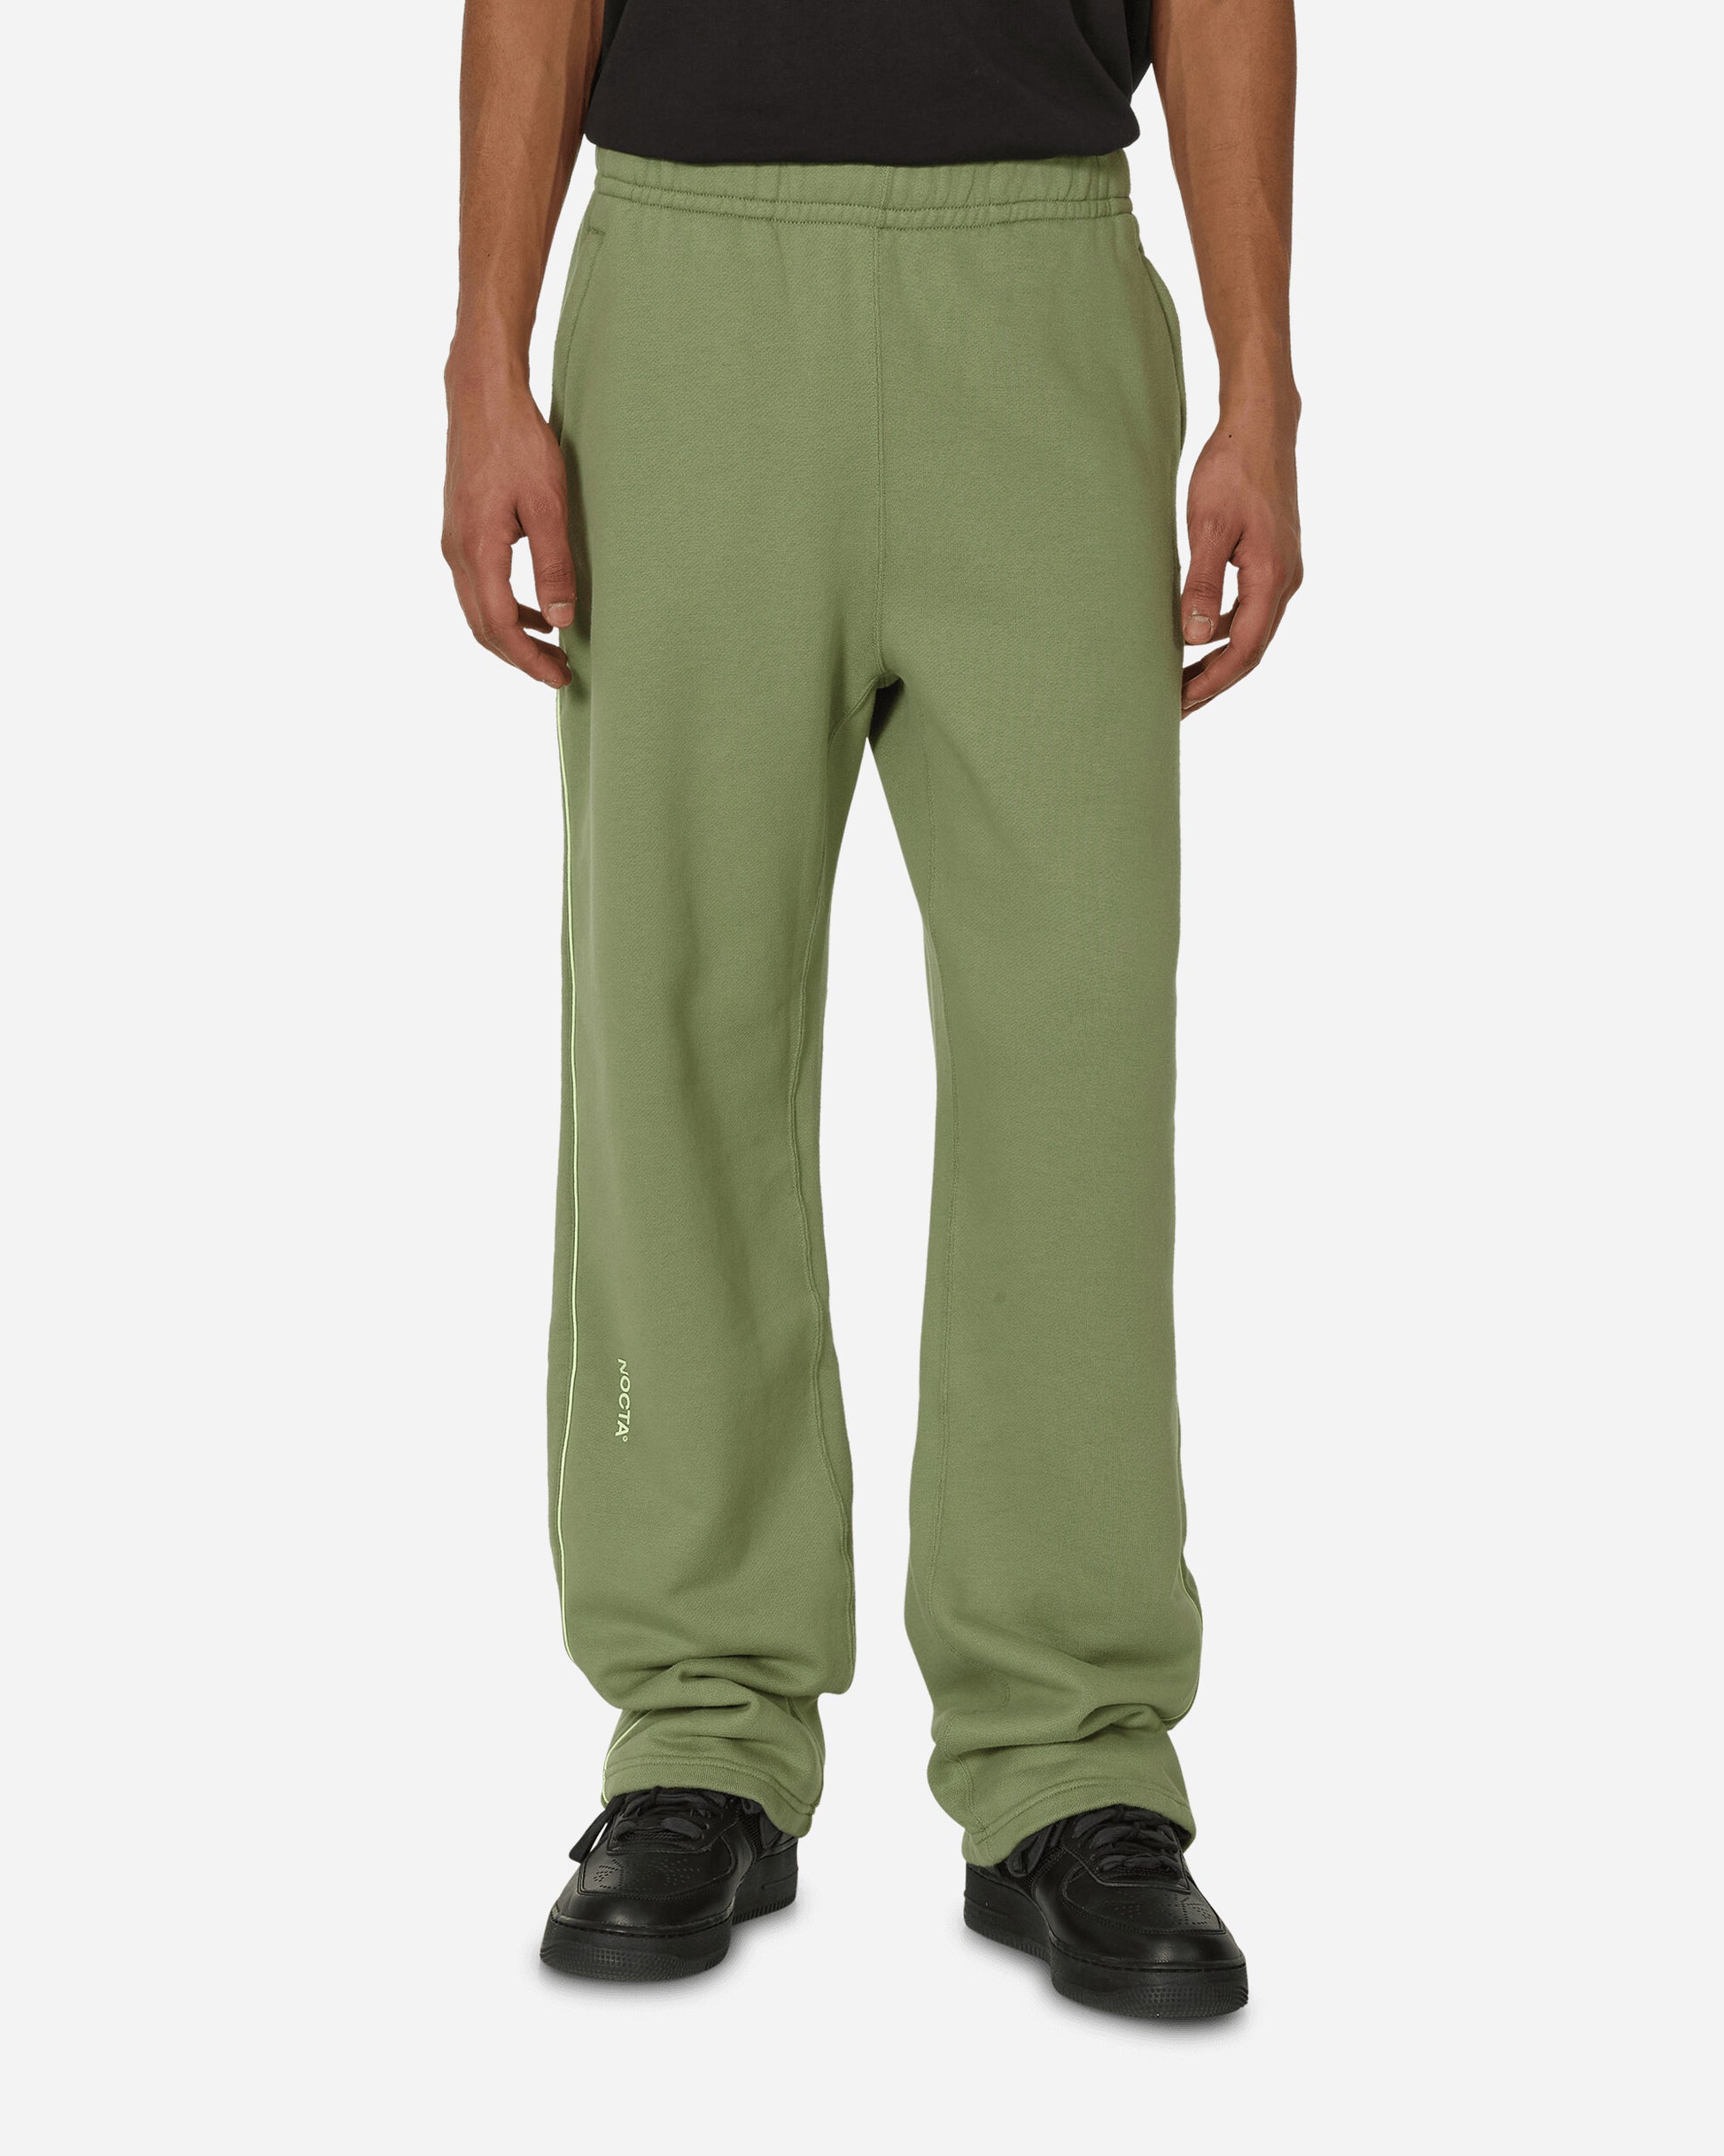 Nike M Nrg Nocta Cs Pant Flc Oh Oil Green/Lt Liquid Lime Pants Sweatpants FZ4675-386